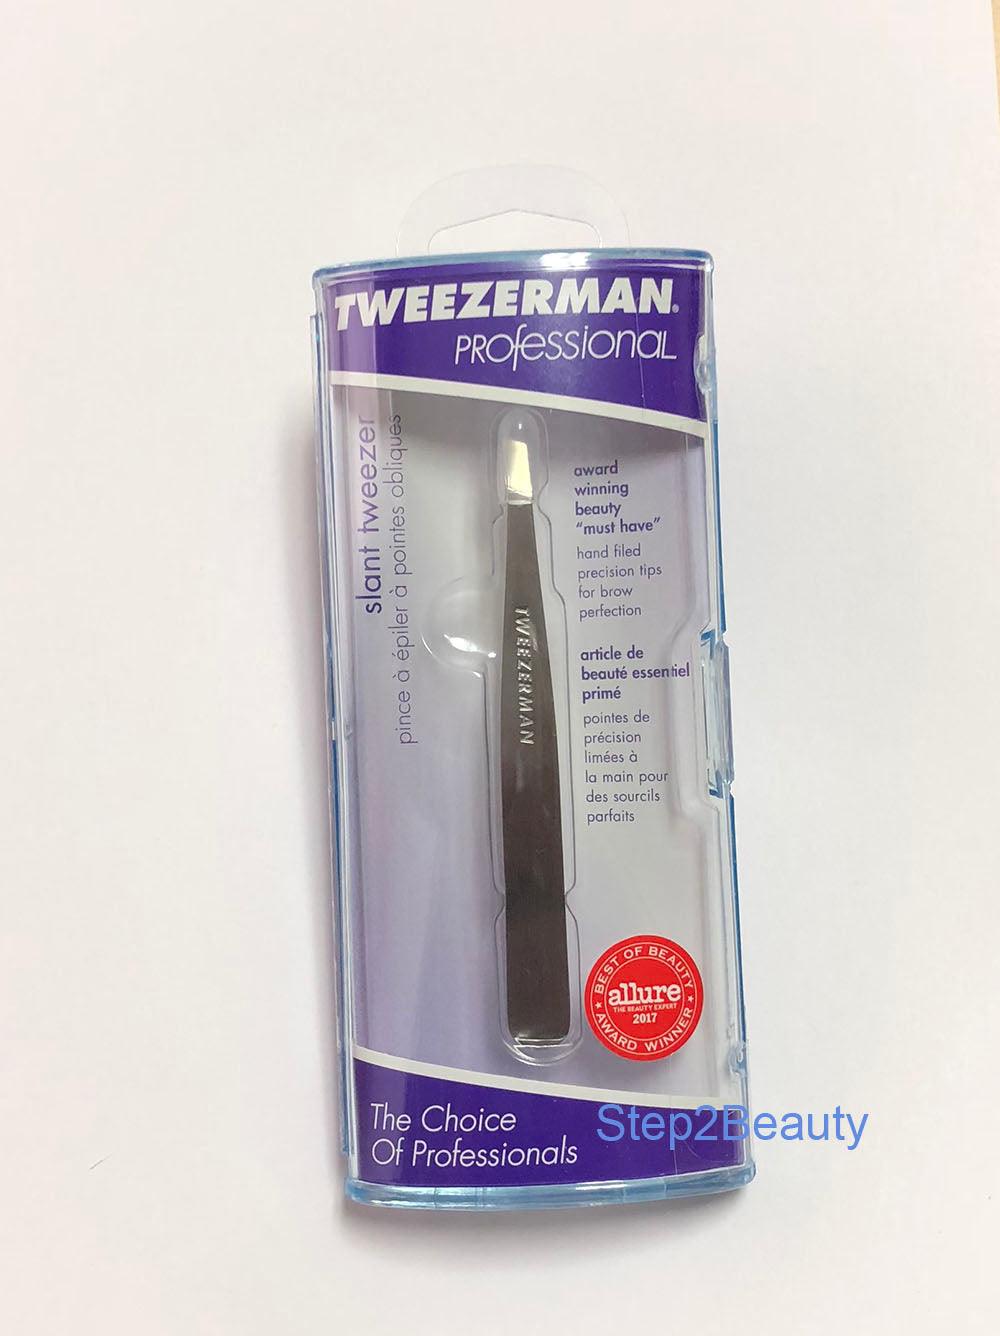 Tweezerman Stainless Steel Slant Tweezer - #1231-P